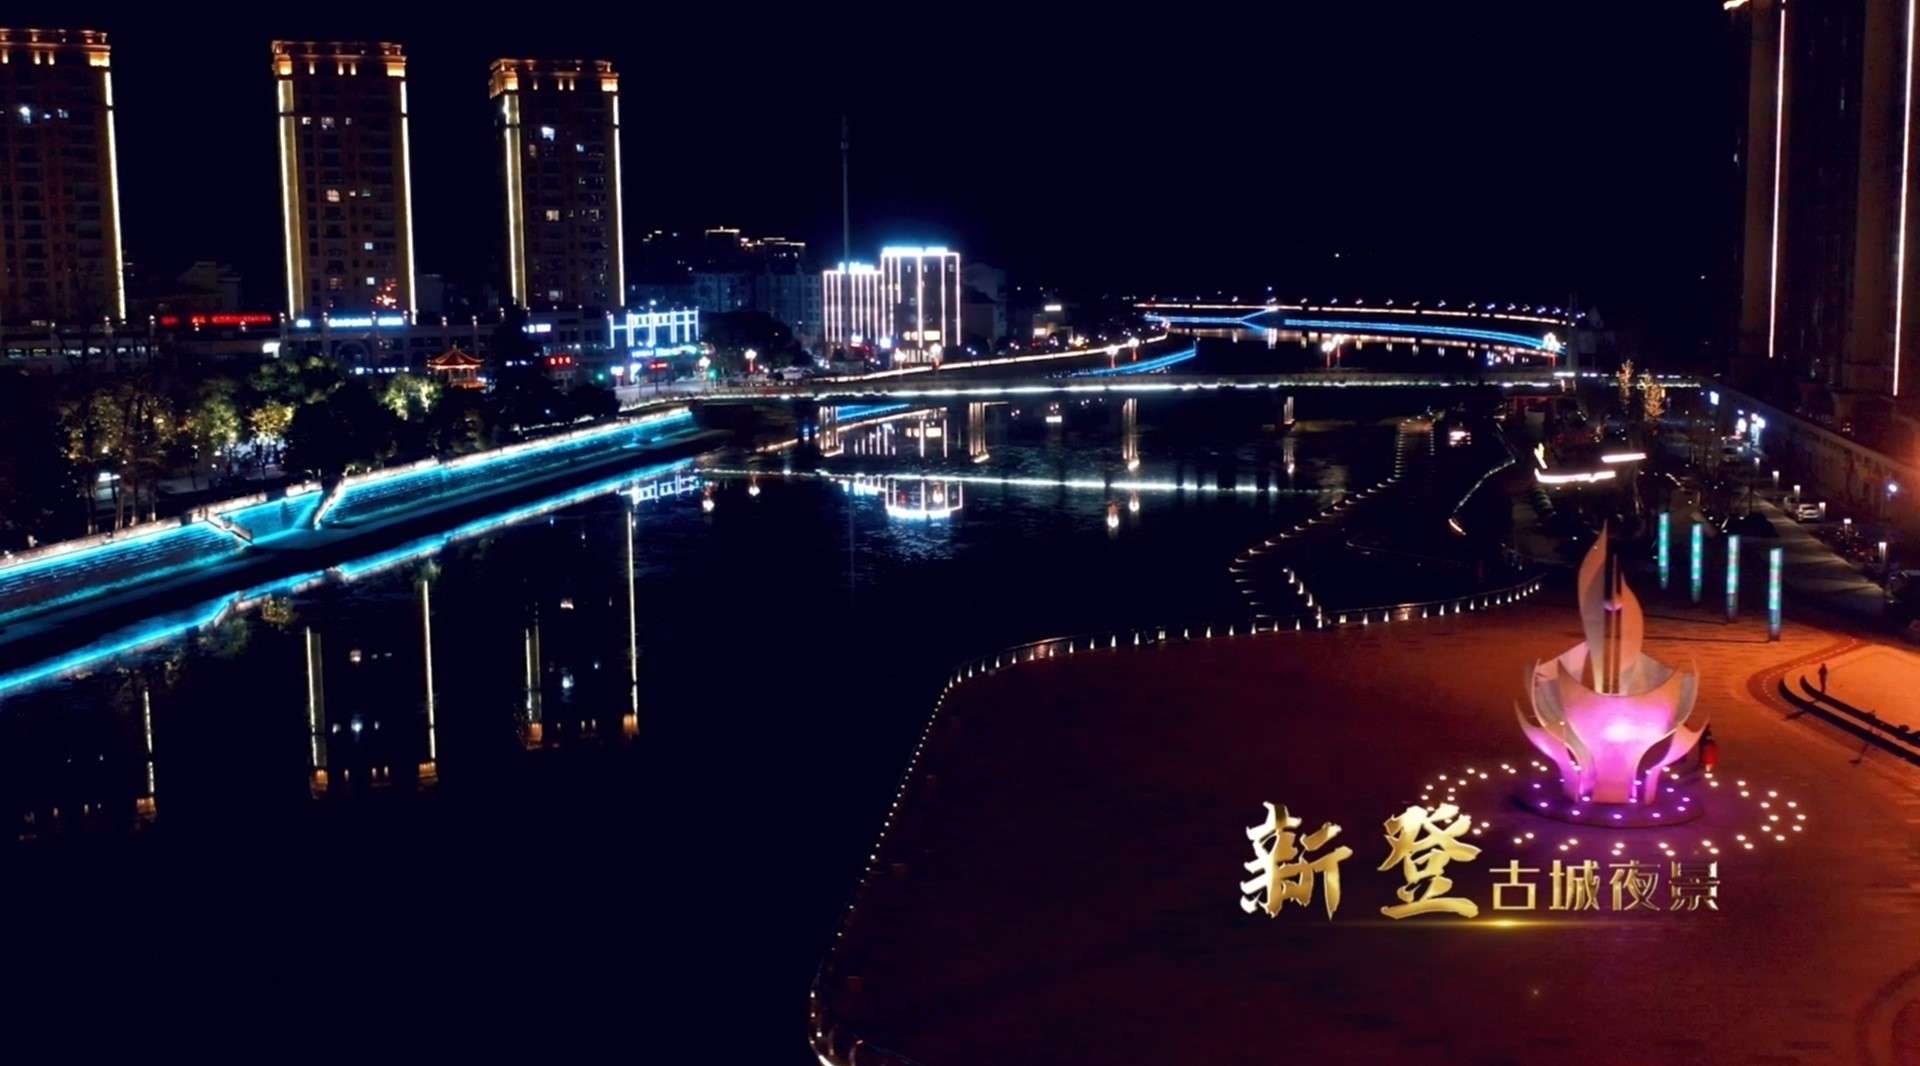 《新登·古城夜景》杭州市富阳区新登镇人民政府出品